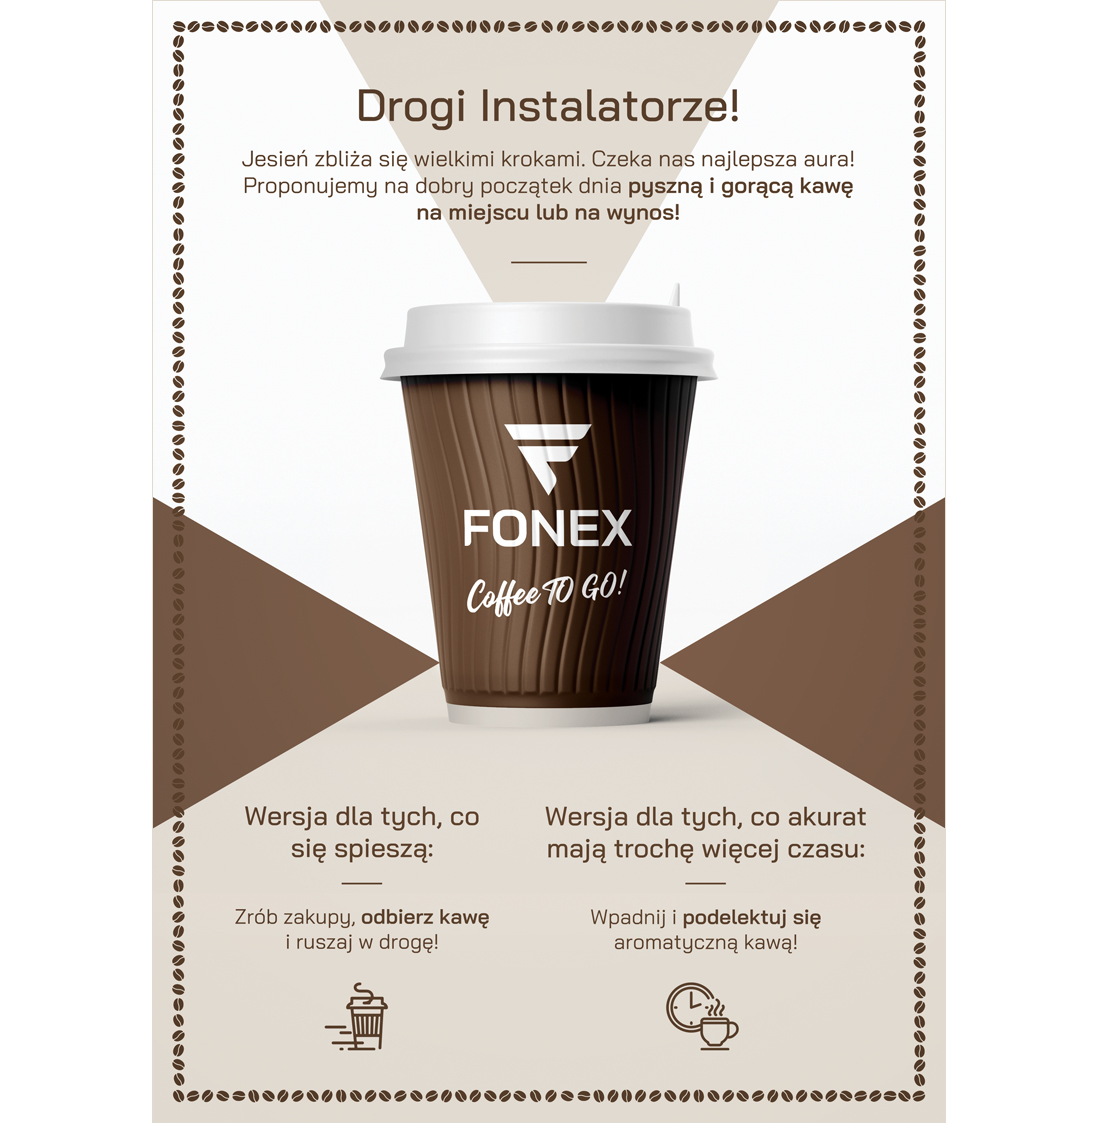 FONEX Zapraszamy na pyszną i gorącą kawę!